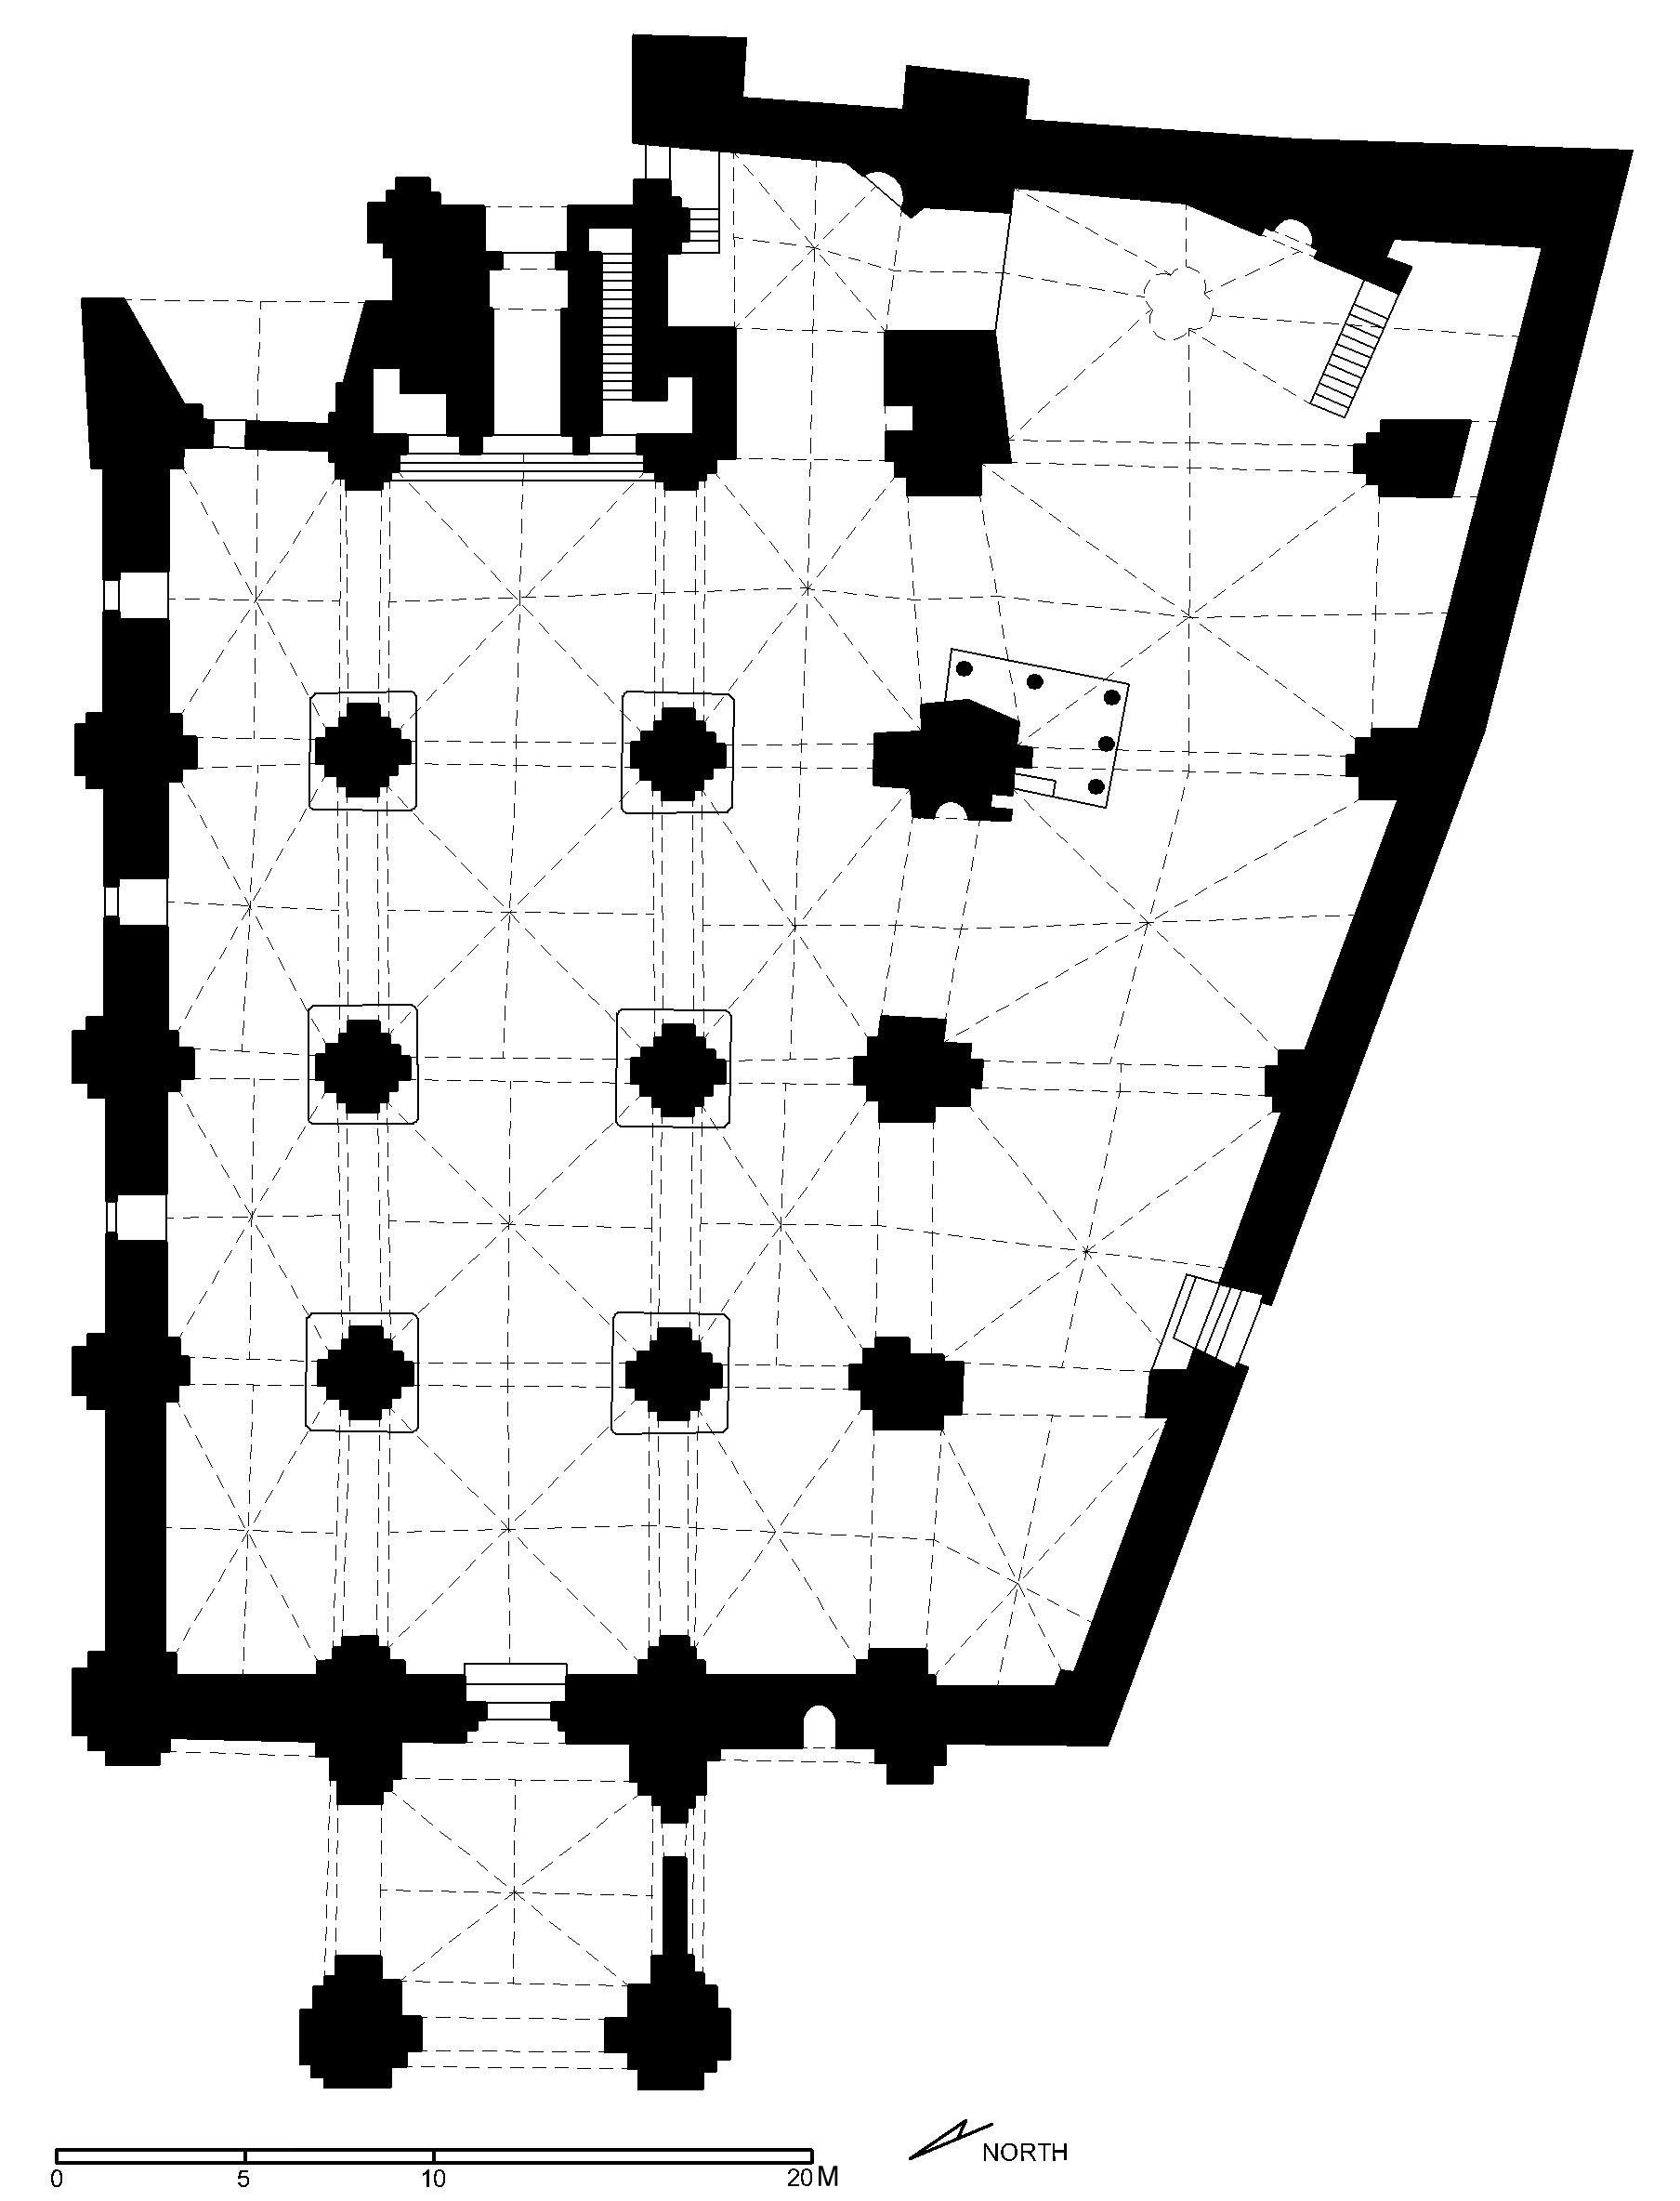 Floor plan of Great Mosque of Gaza